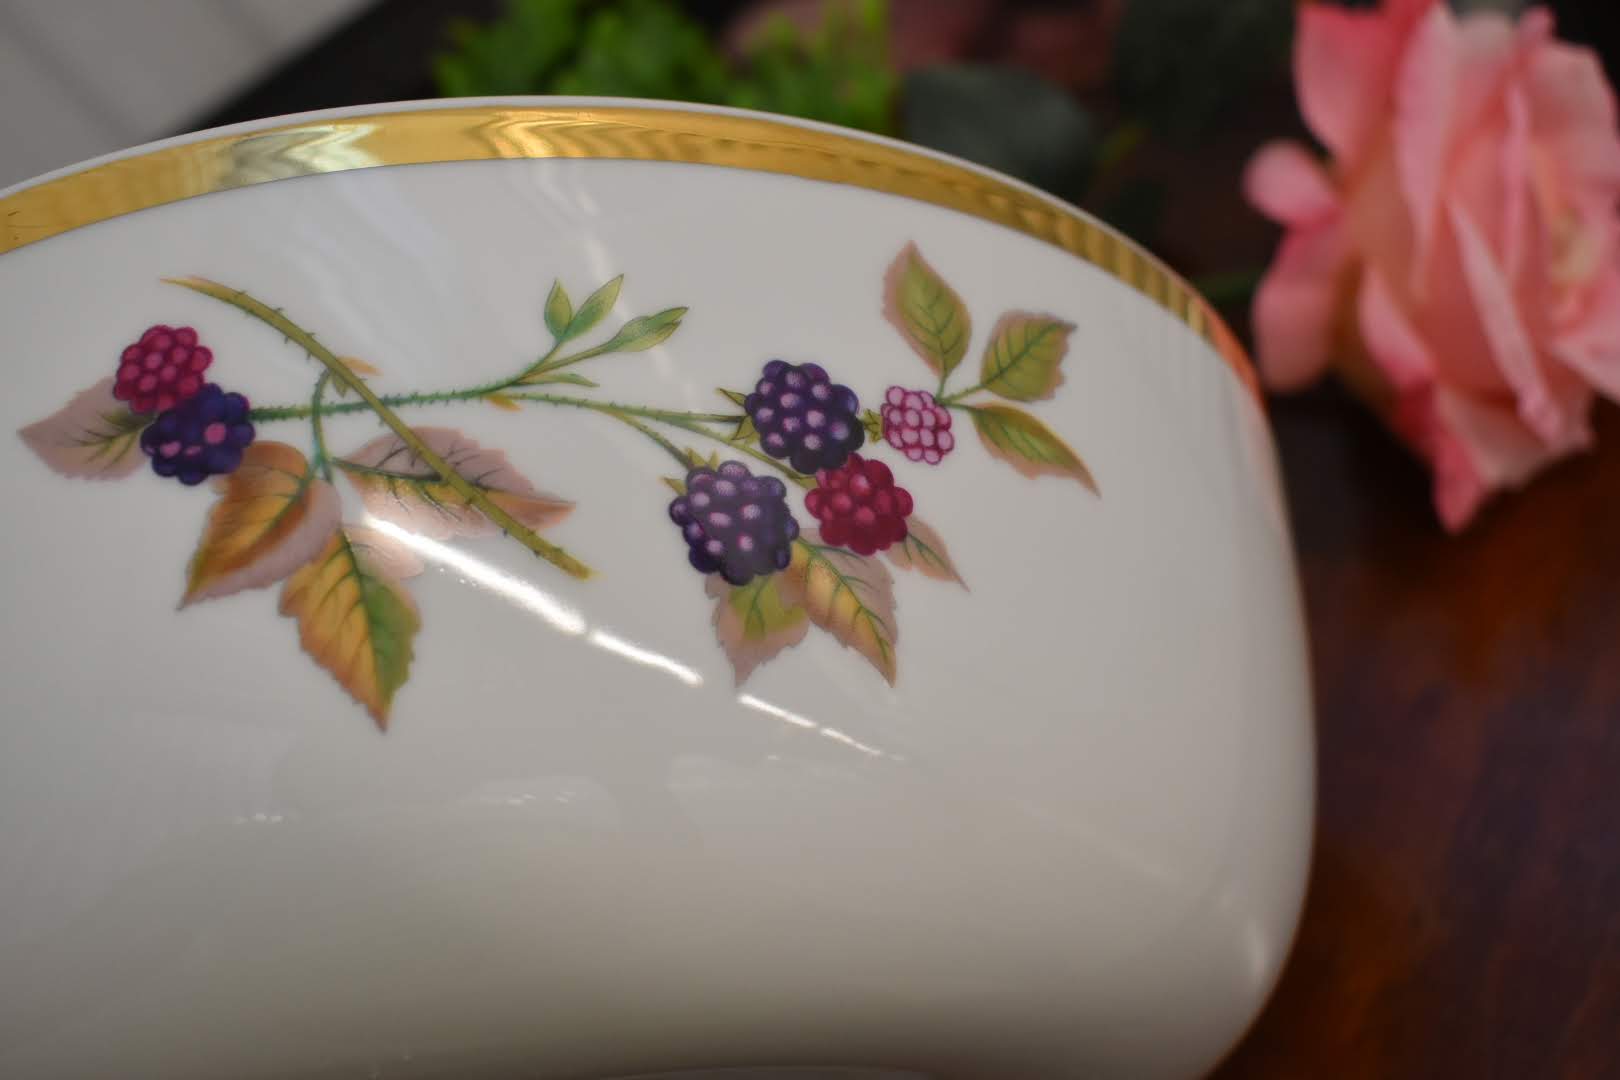 Royal Worchester Evesham - Fine Porcelain China - Huge Bowl - Gold Trim - From England